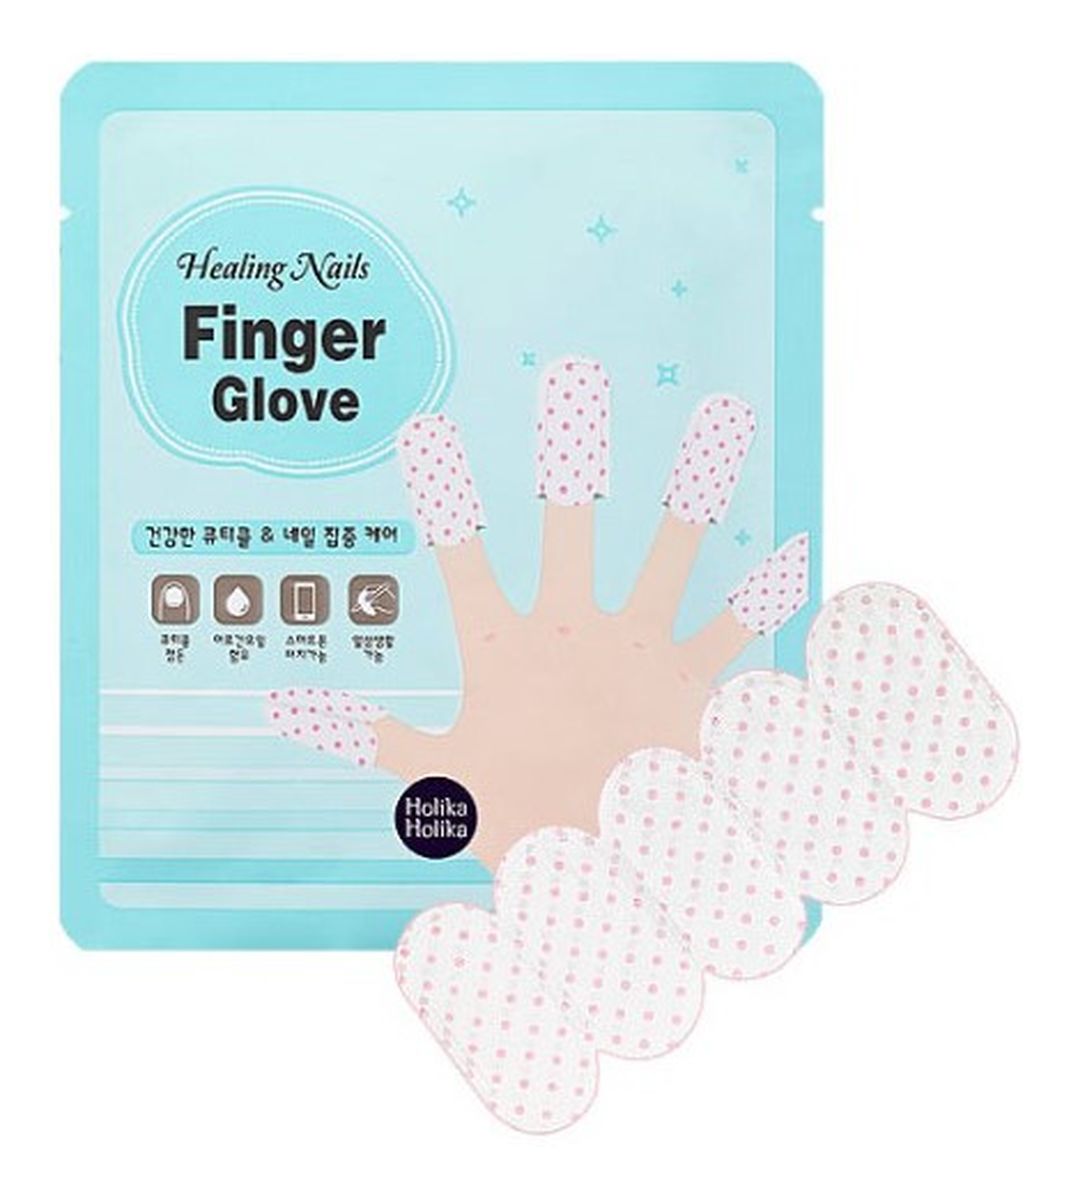 Nails Finger Glove - Pielęgnacyjne rękawiczki do paznokci